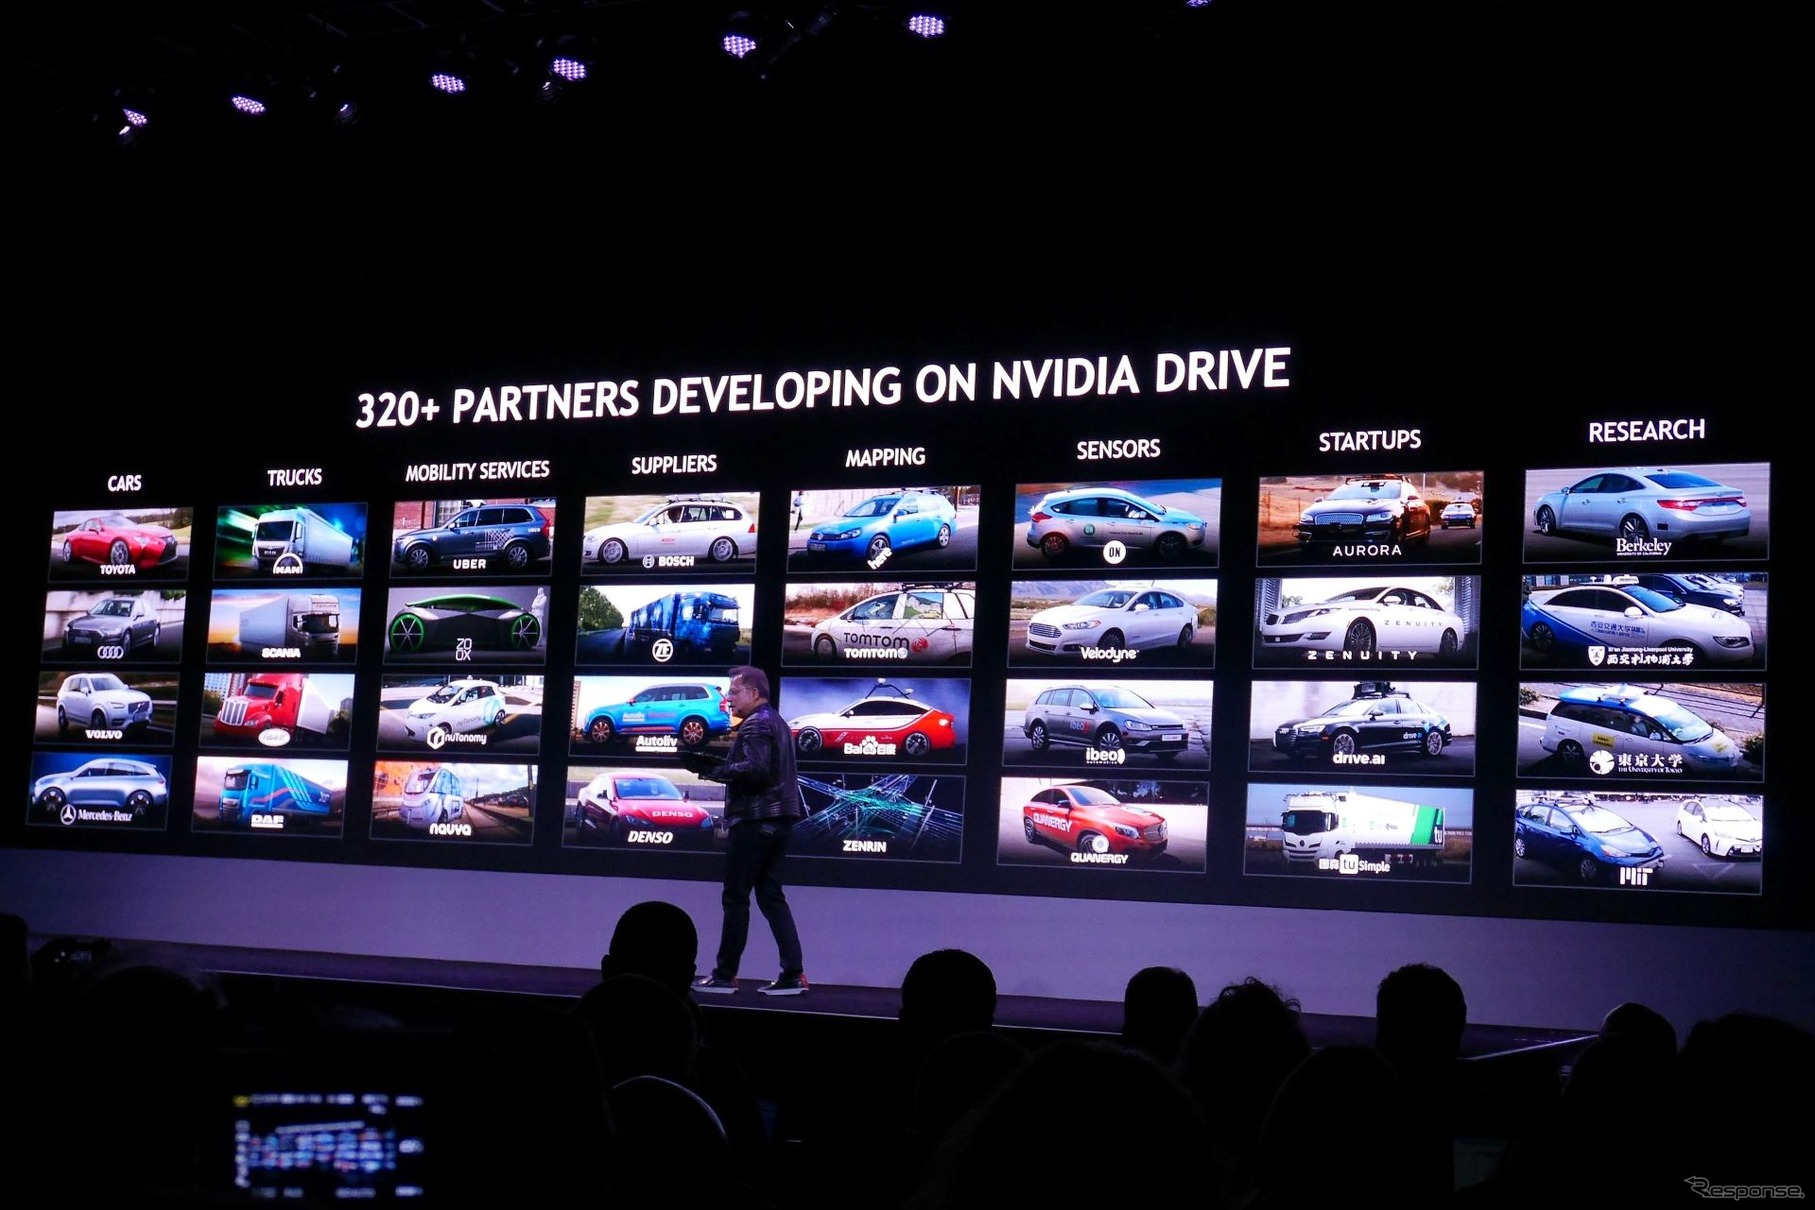 NVIDIAの技術を利用する企業が320を超えた